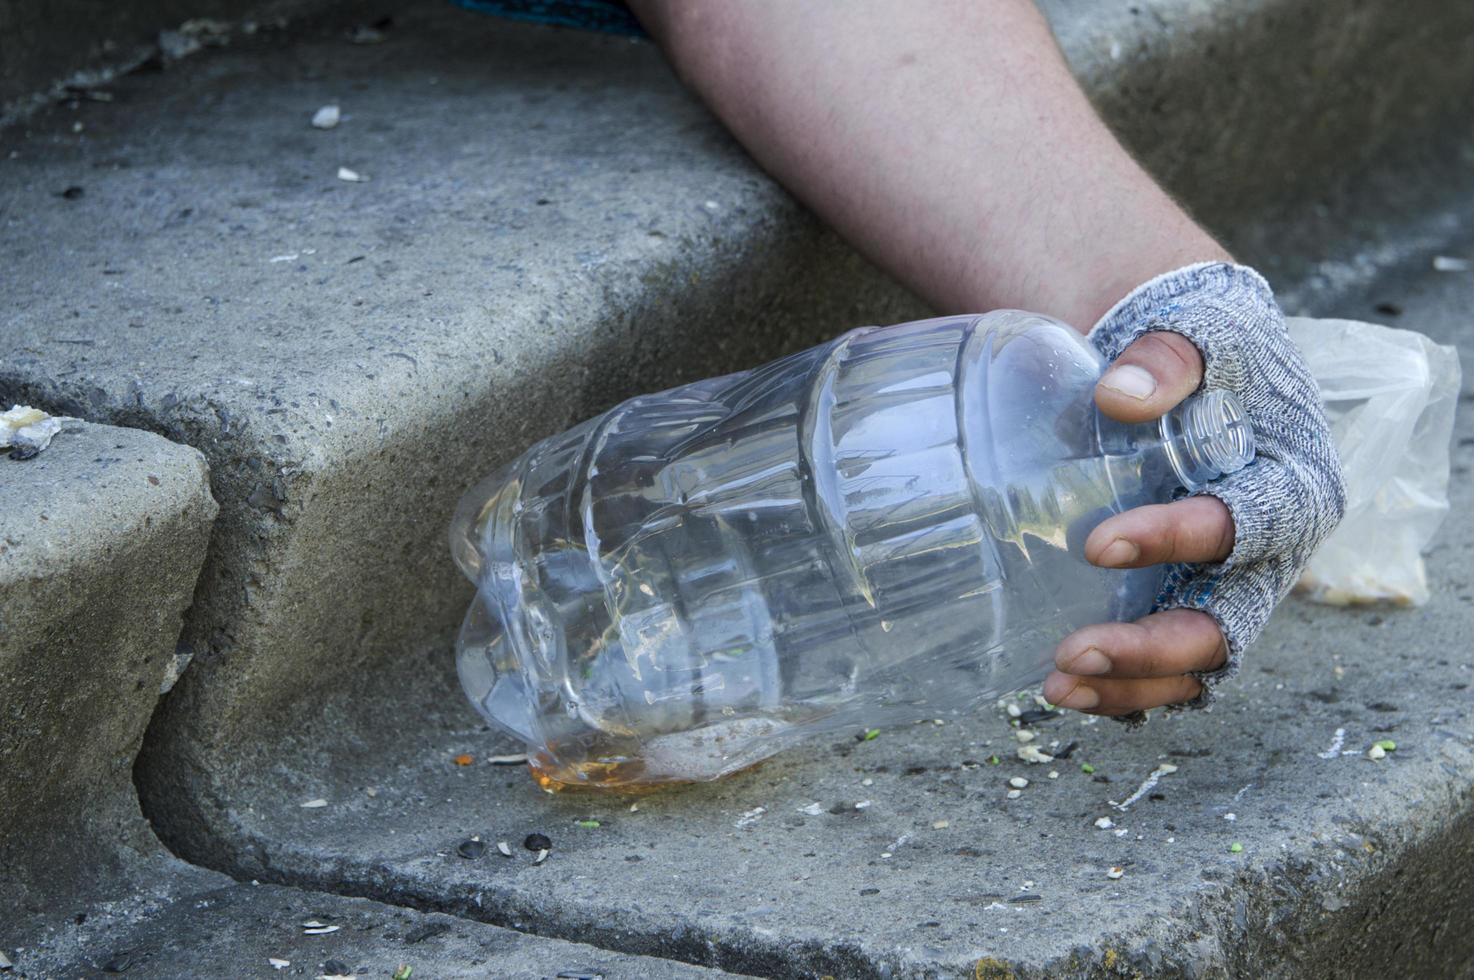 de gehandschoende hand van een dakloze op een lege bierfles. armoede, werkloosheid, alcoholisme. foto